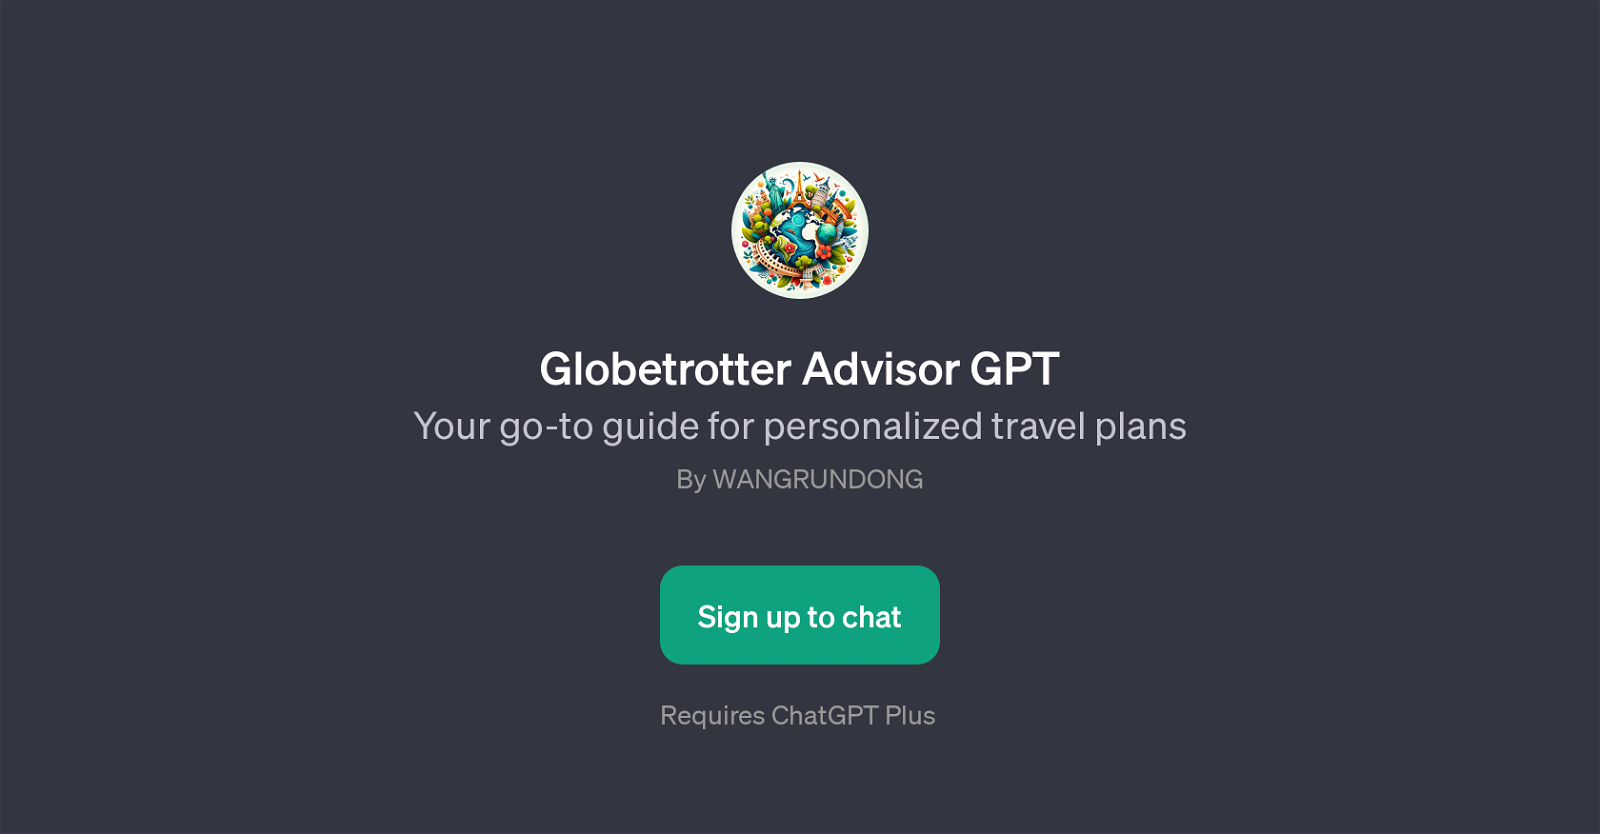 Globetrotter Advisor GPT website